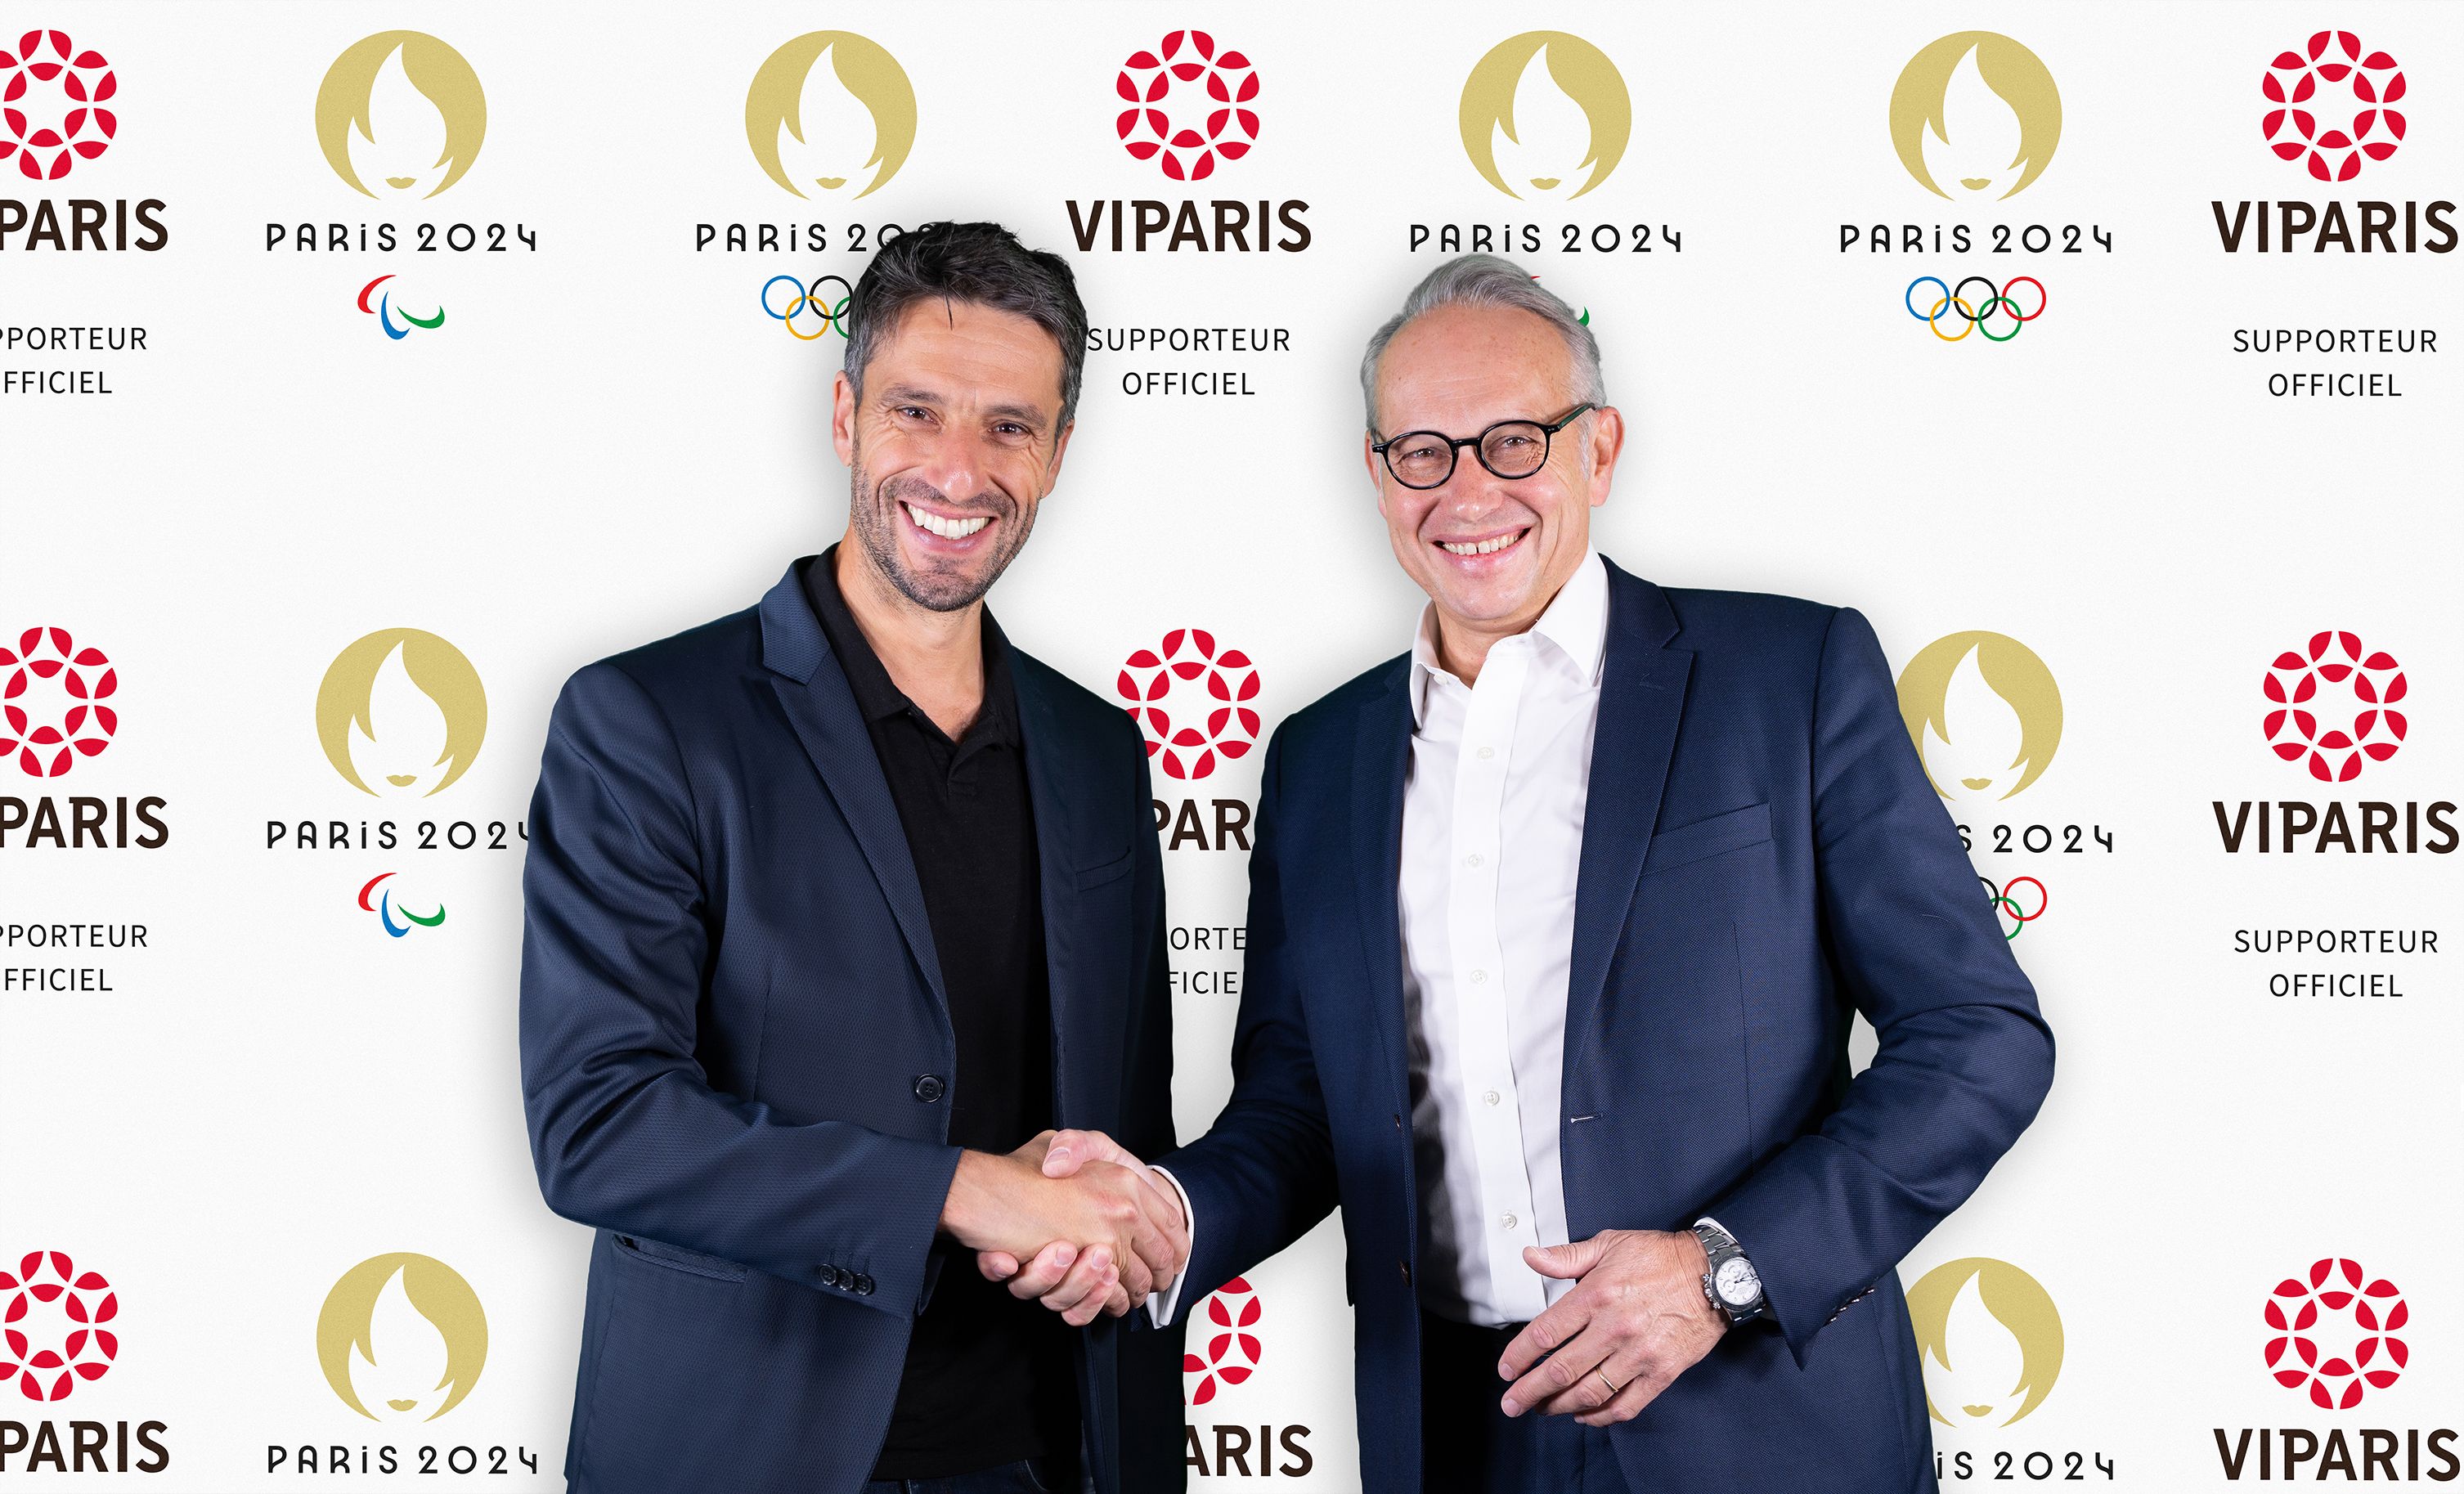 Annonce partenariat Viparis et Paris 2024